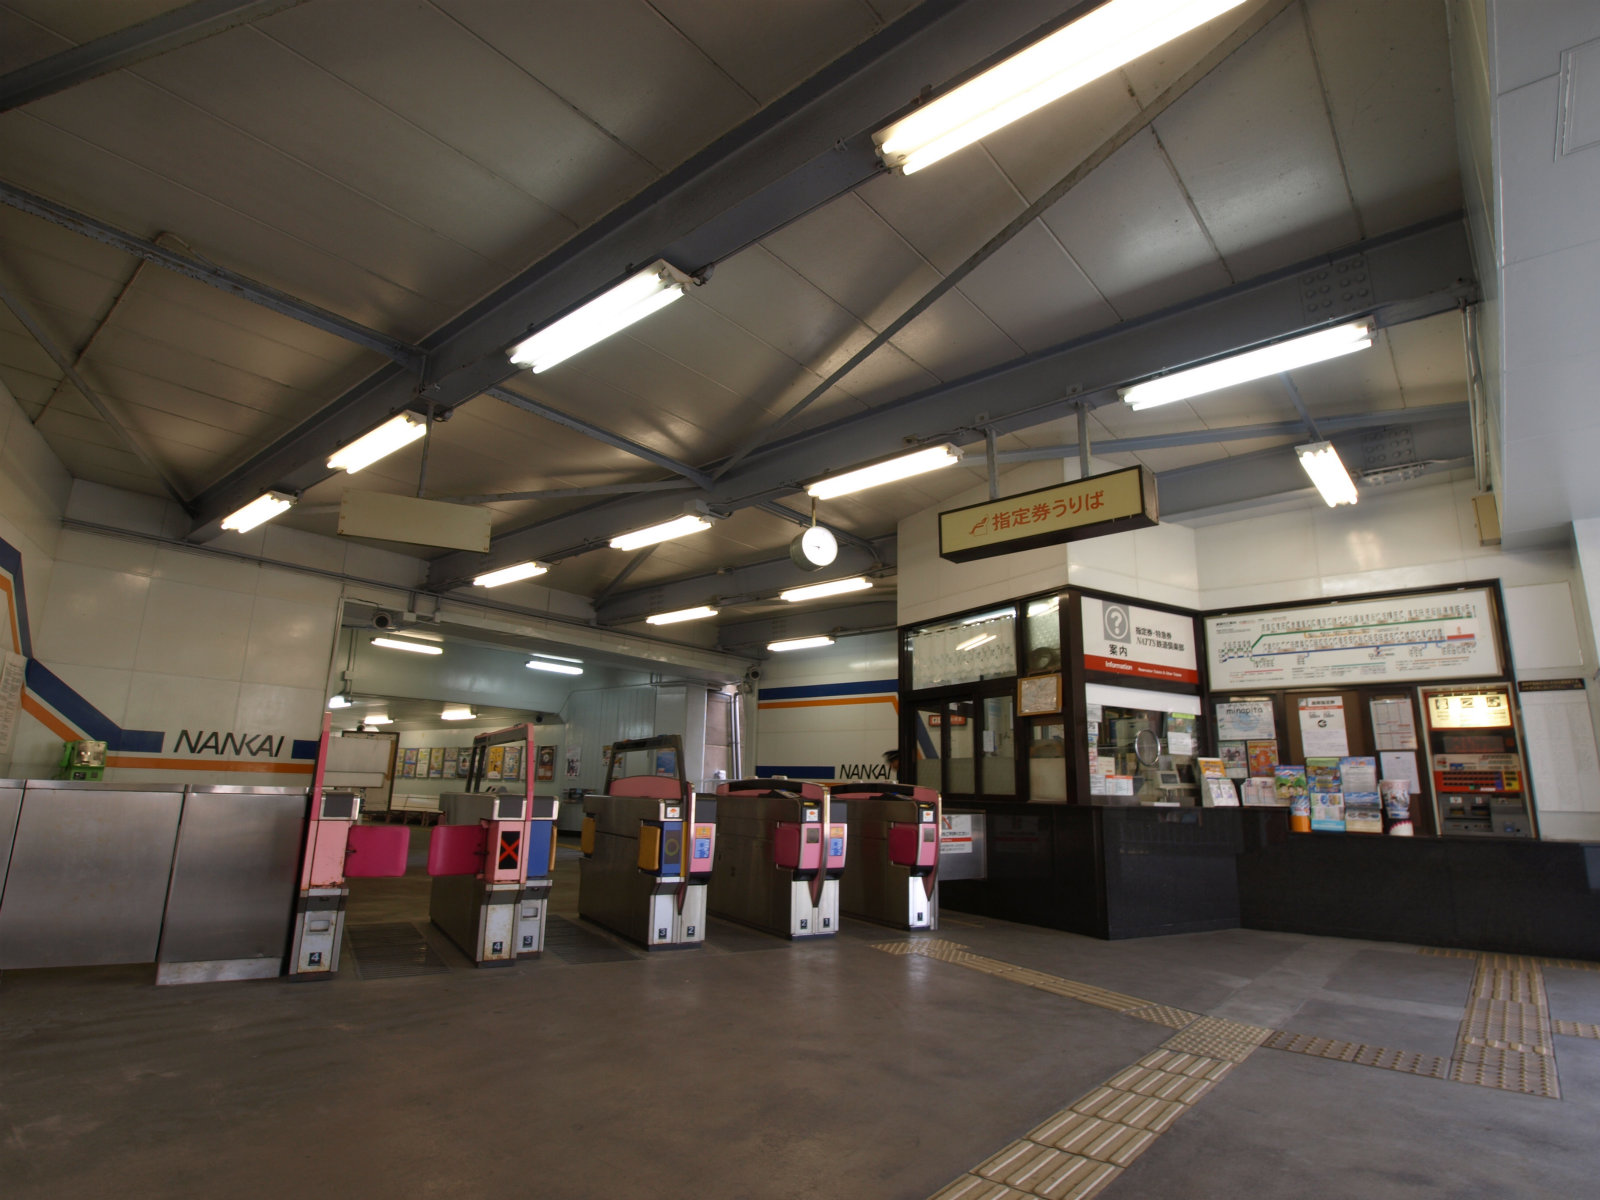 和歌山港駅